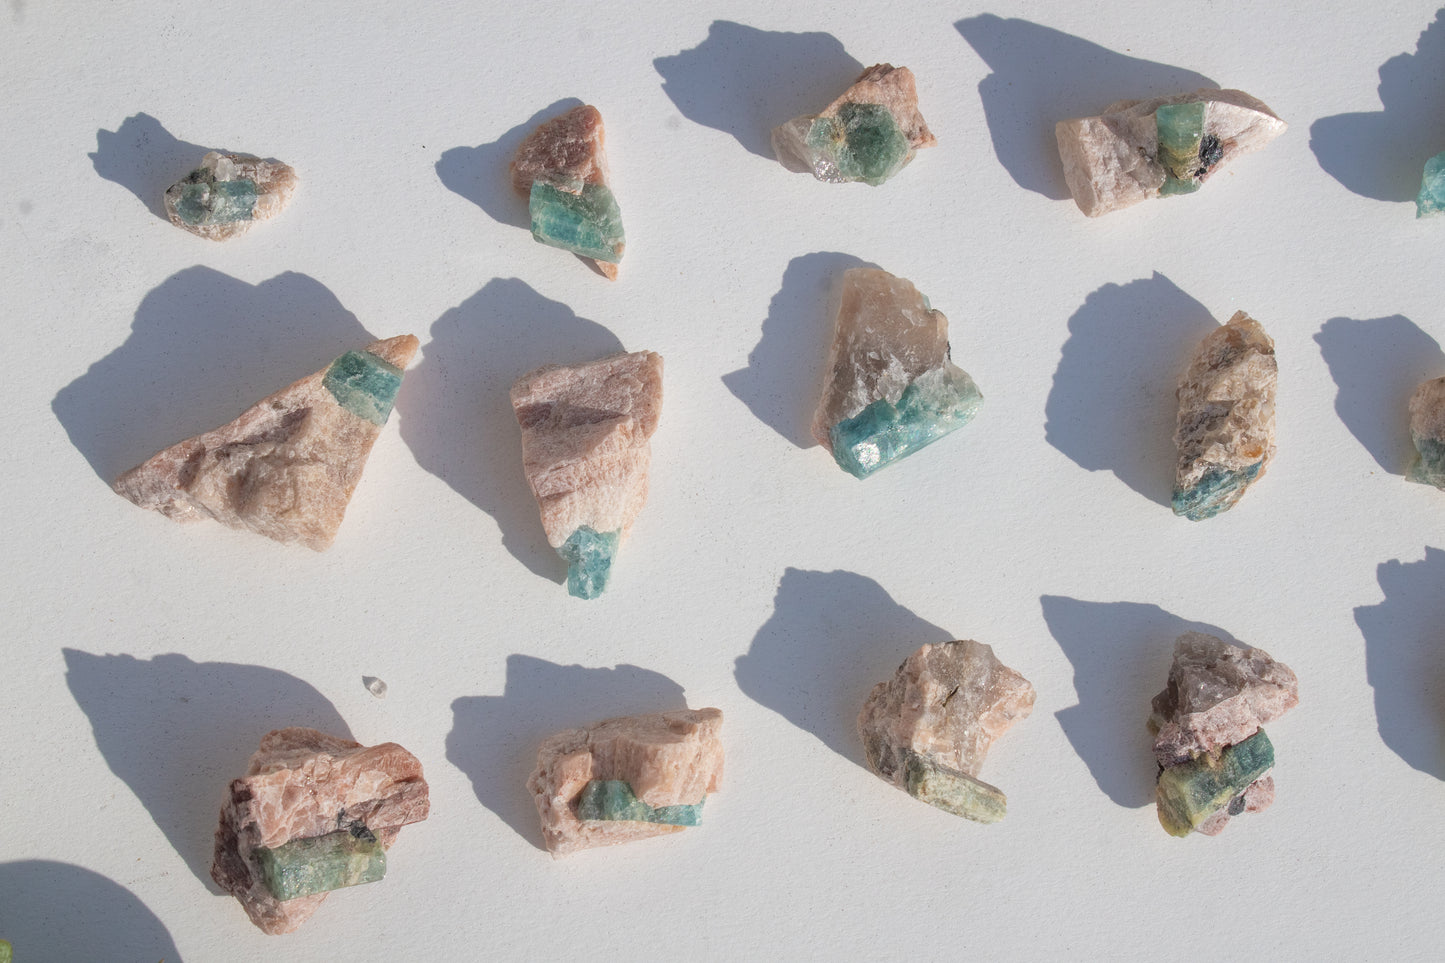 Aquamarine pieces in matrix